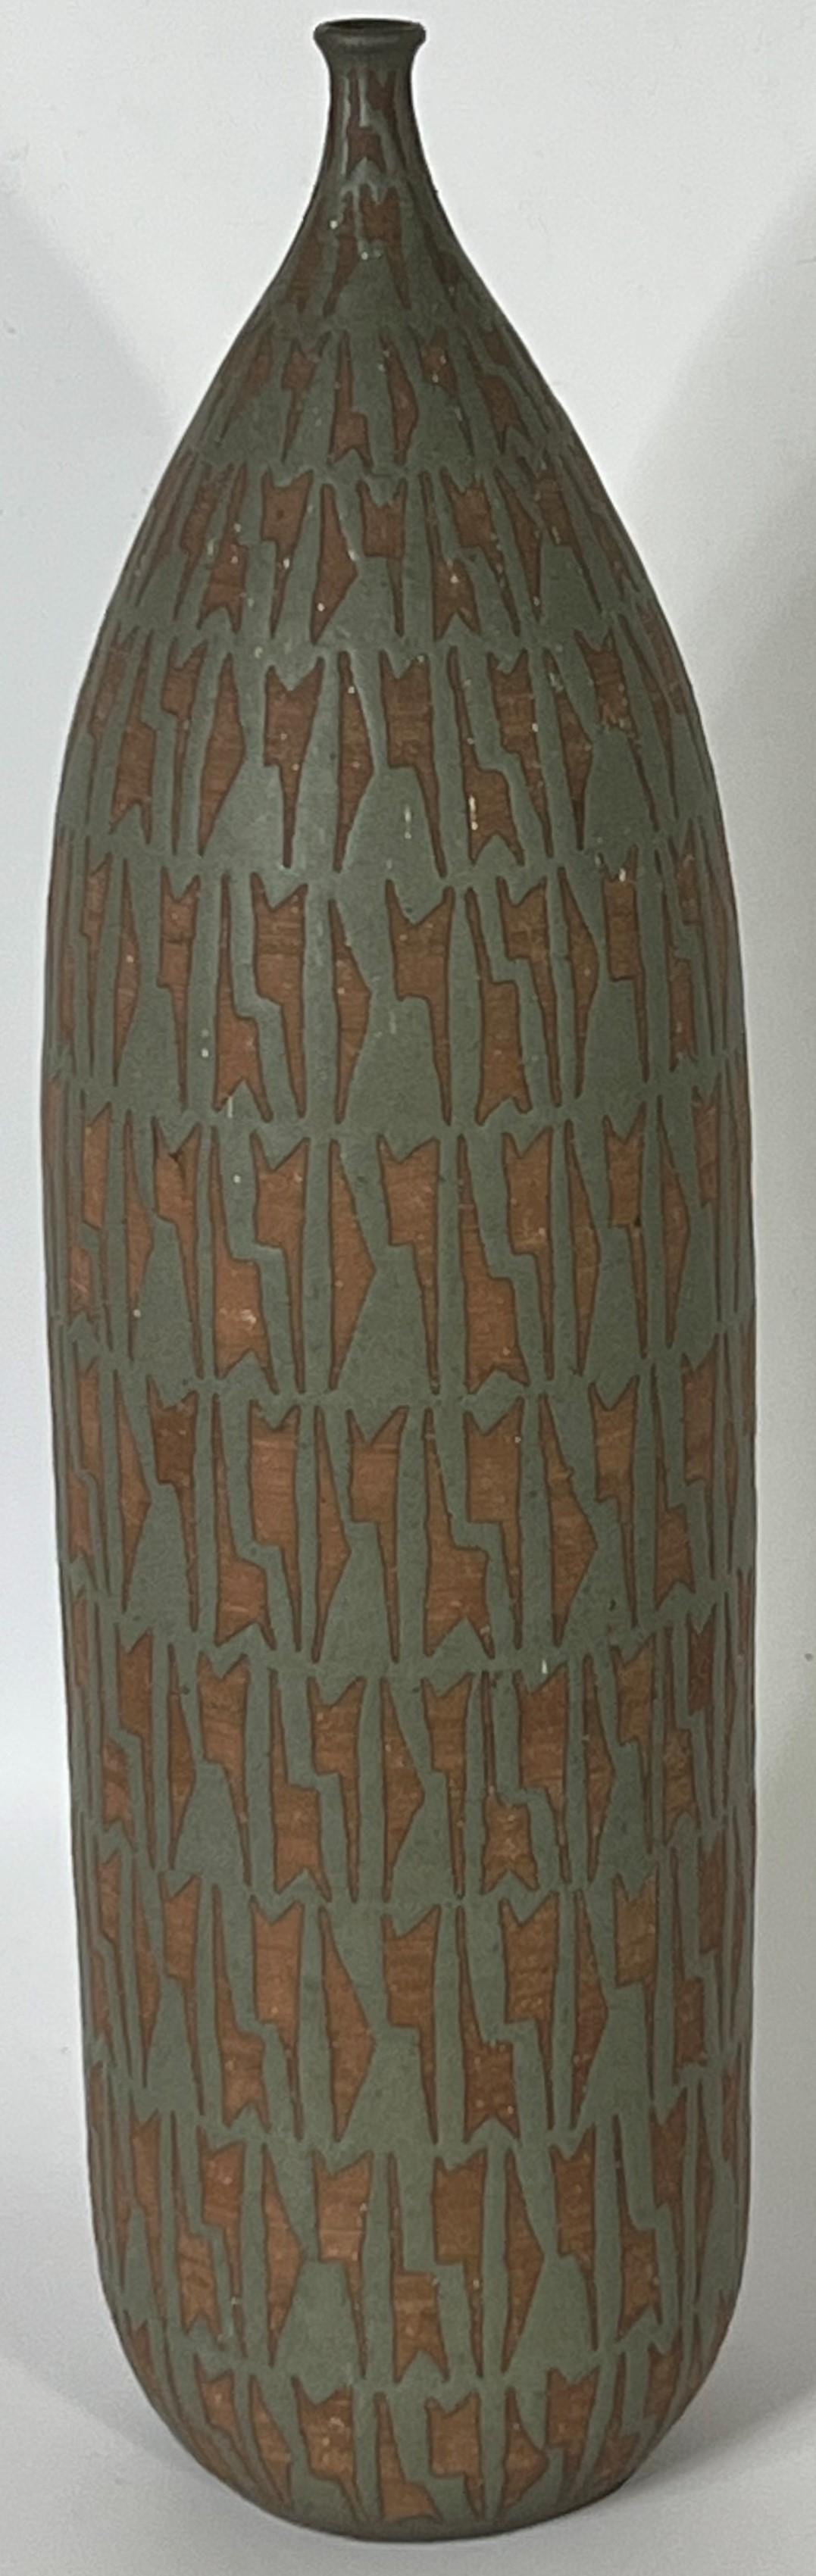 Un vase monumental en forme d'herbe par le potier du Studio Clyde Burt.  Il mesure 20